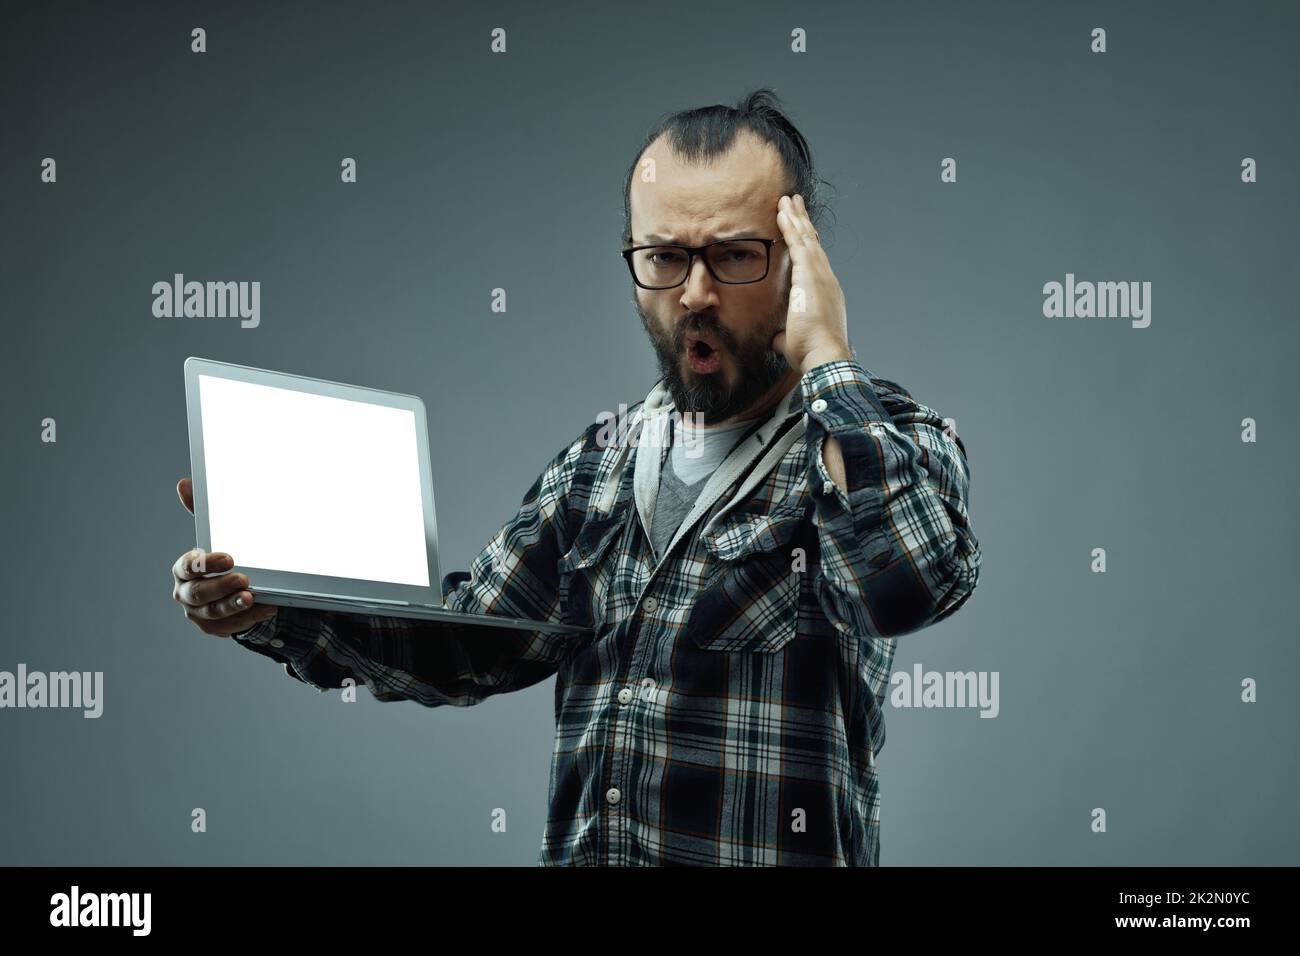 Homme avec une expression faciale stupéfaite tout en tenant un ordinateur portable Banque D'Images